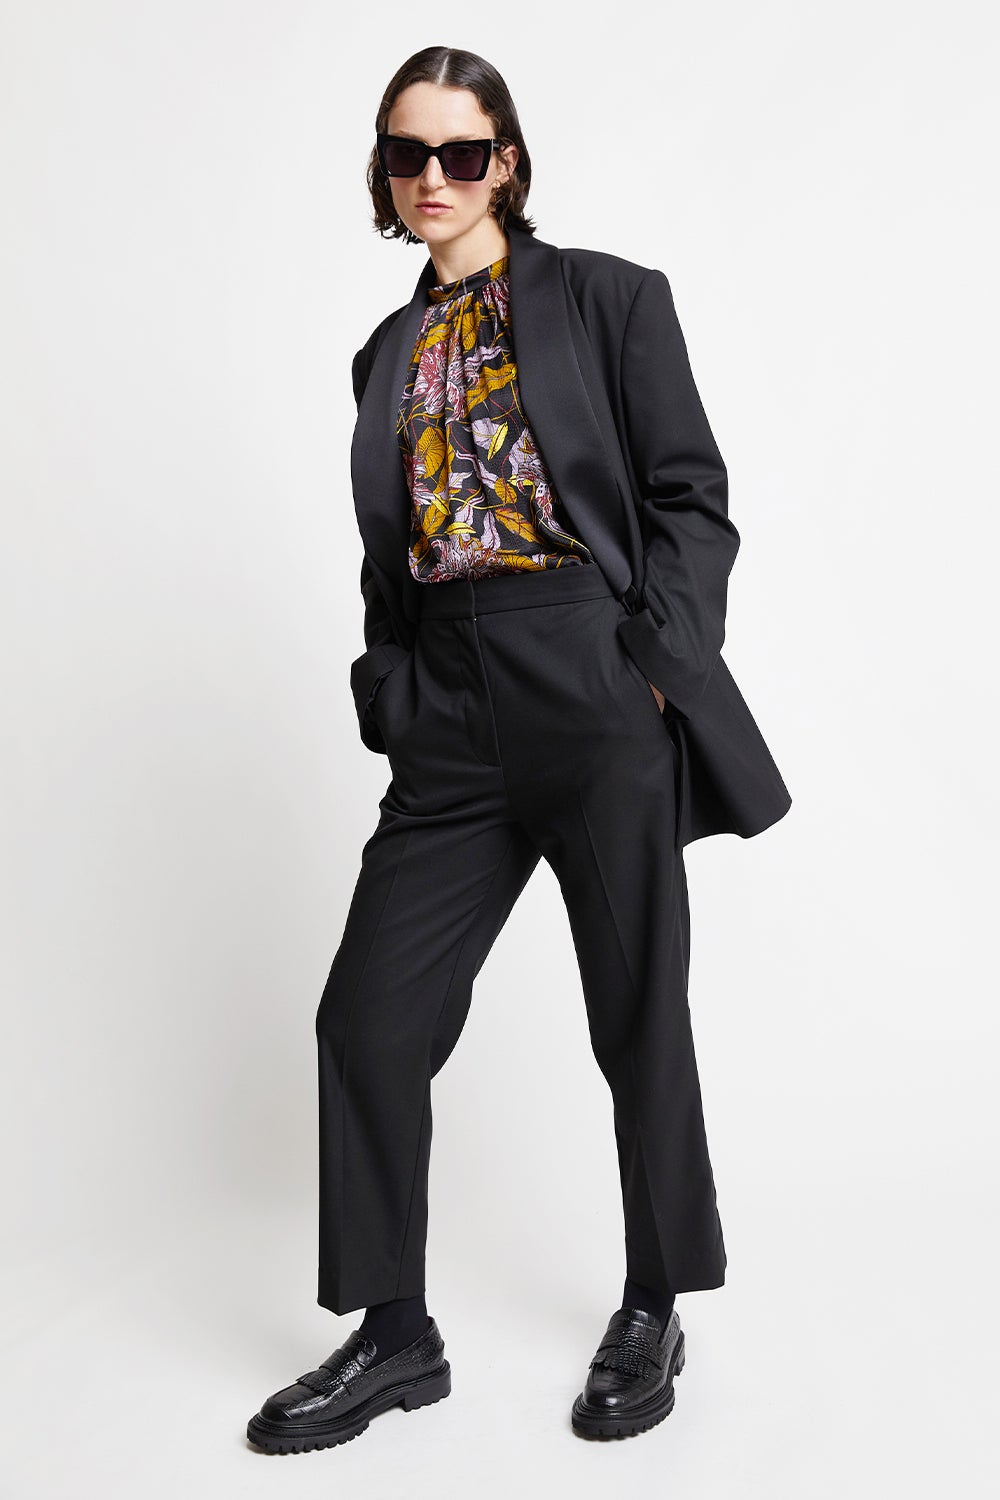 Best Suit Vest For Women 2022 | POPSUGAR Fashion